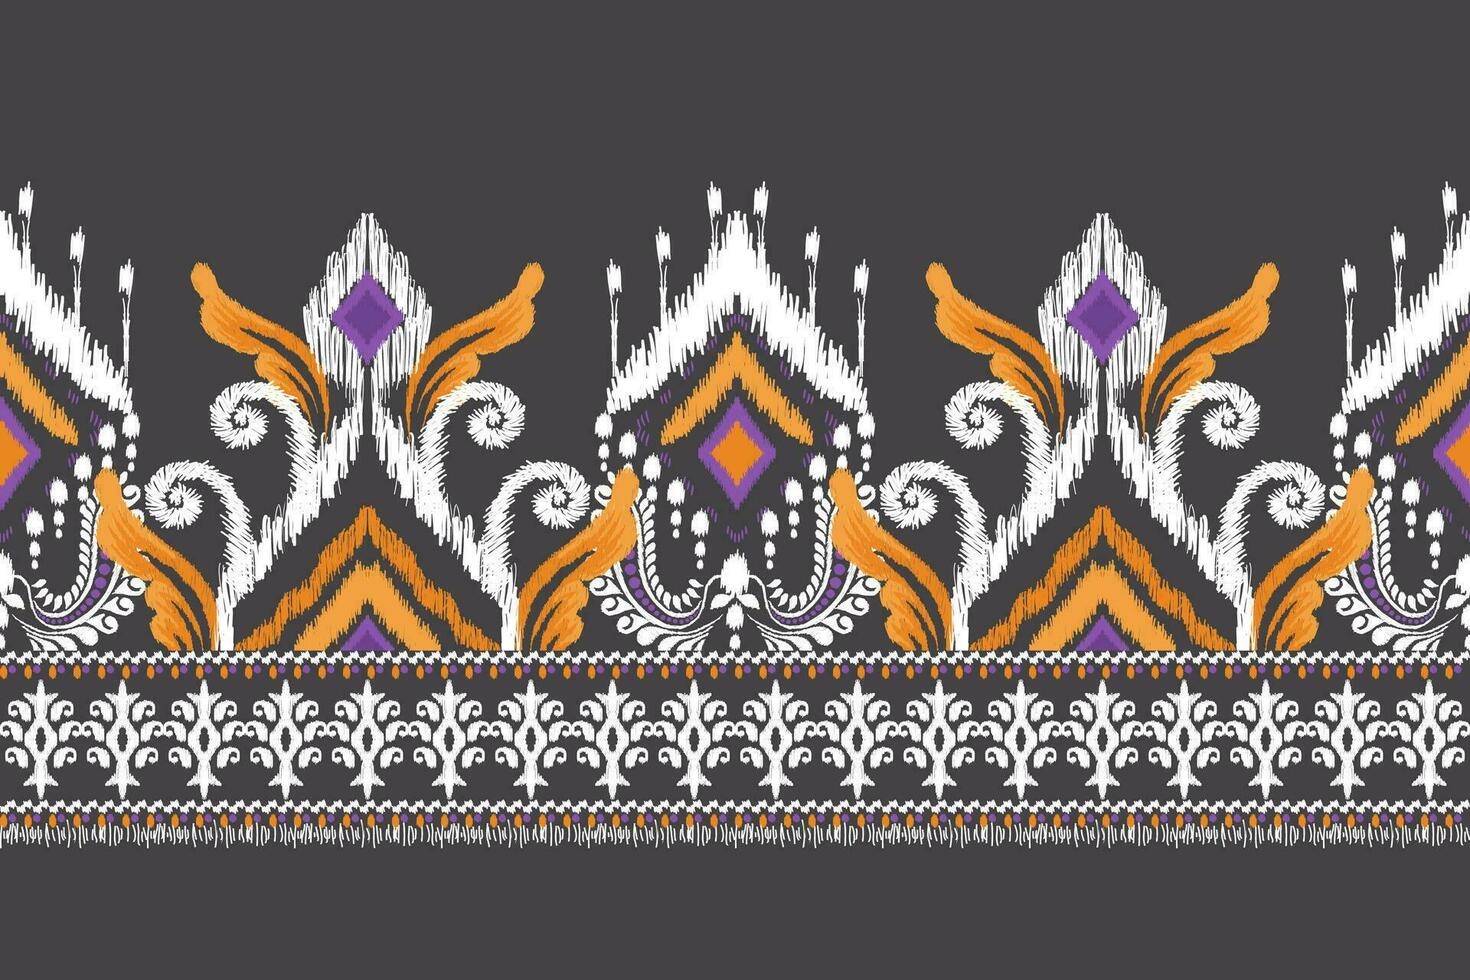 Ikat Blumen- Paisley Stickerei auf schwarz hintergrund.ikat ethnisch orientalisch Muster traditionell.aztekisch Stil abstrakt Vektor illustration.design zum Textur, Stoff, Kleidung, Verpackung, Dekoration, Sarong, Schal